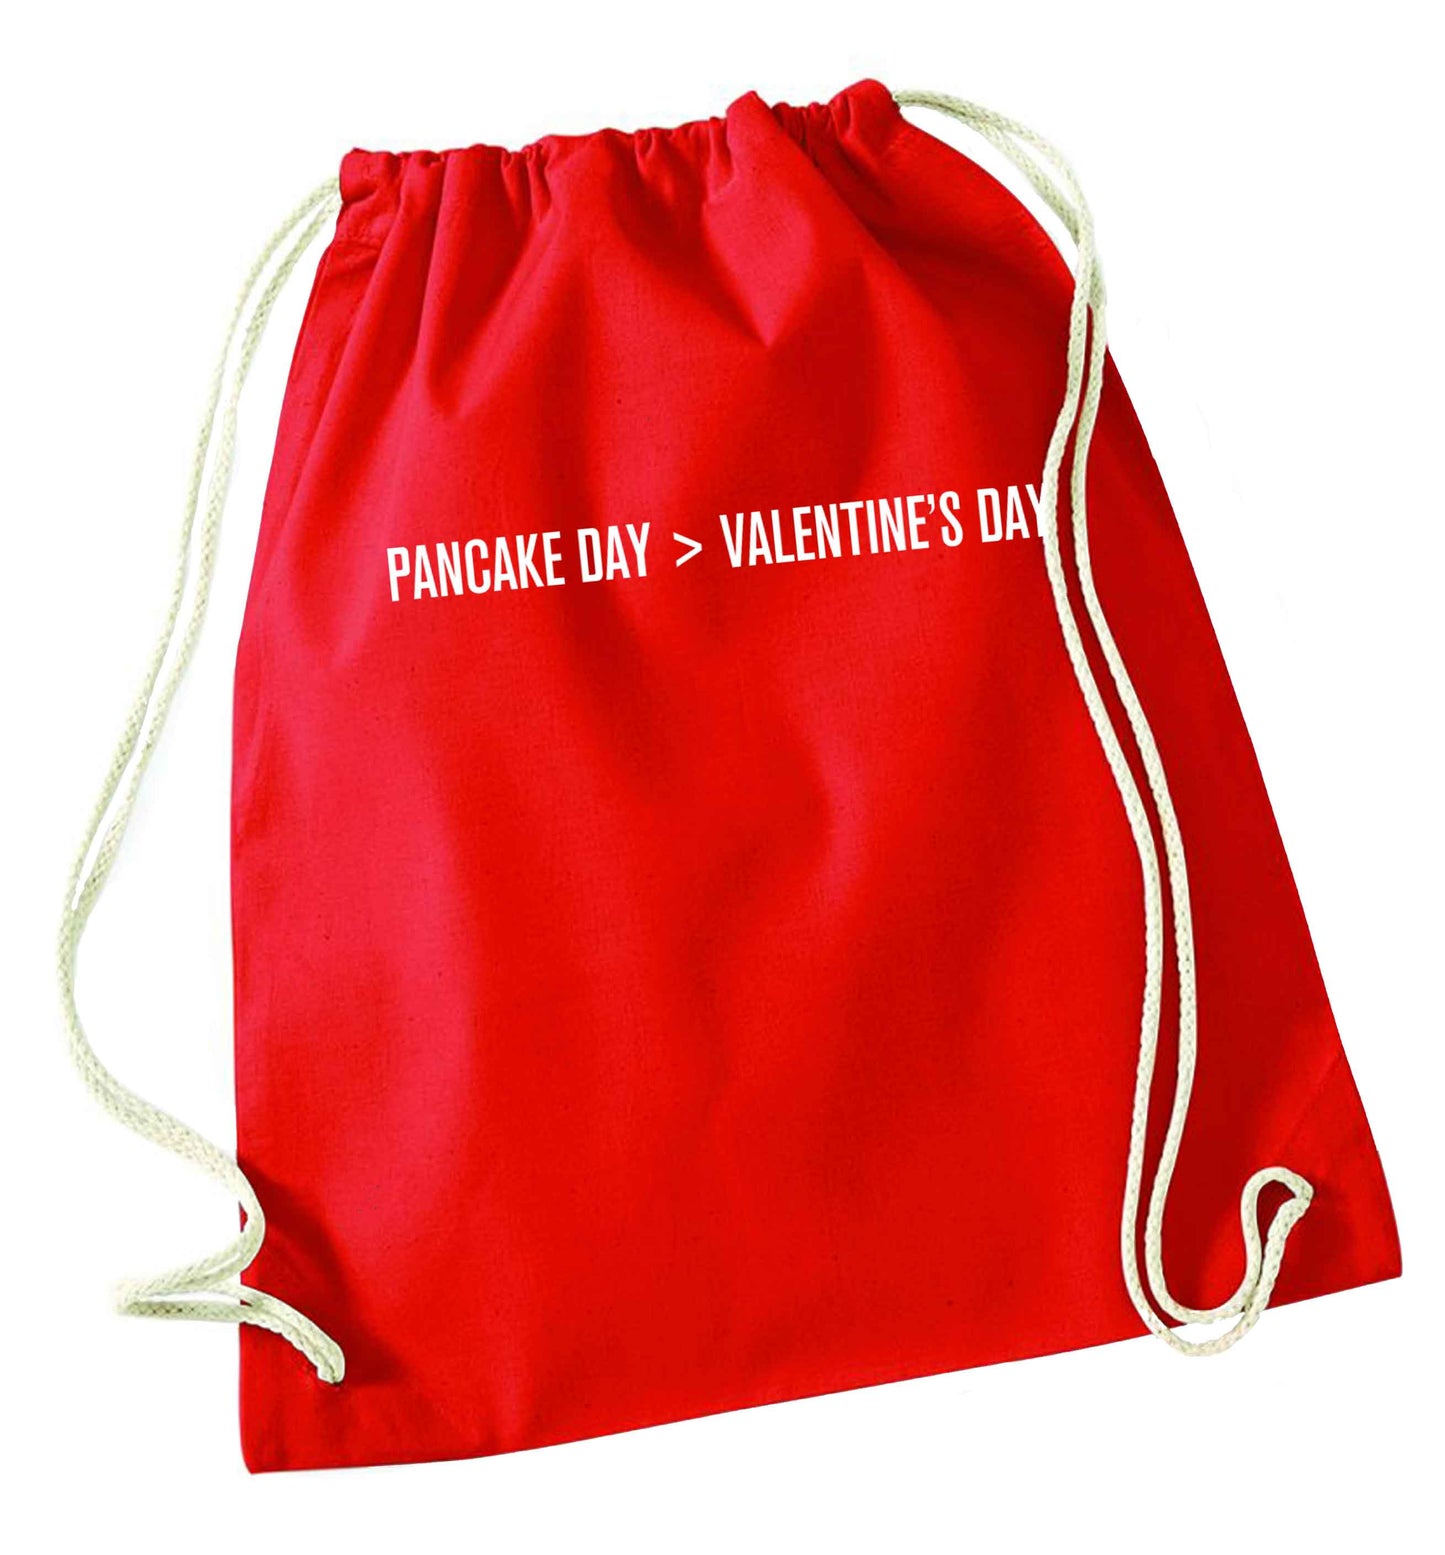 Pancake day > valentines day red drawstring bag 